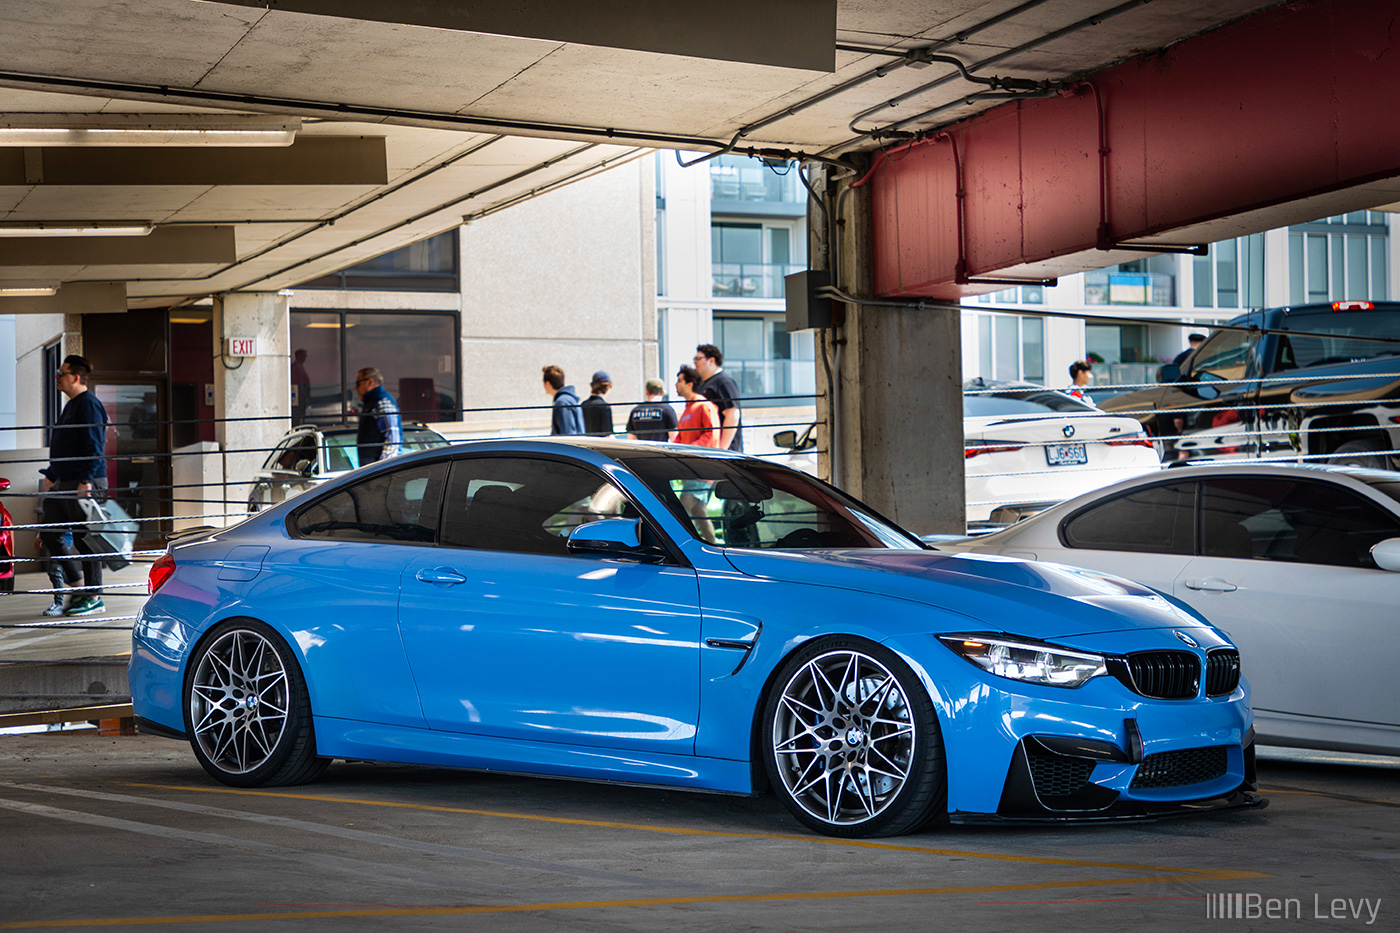 Blue F82 BMW M4 at a Garage in Chicago